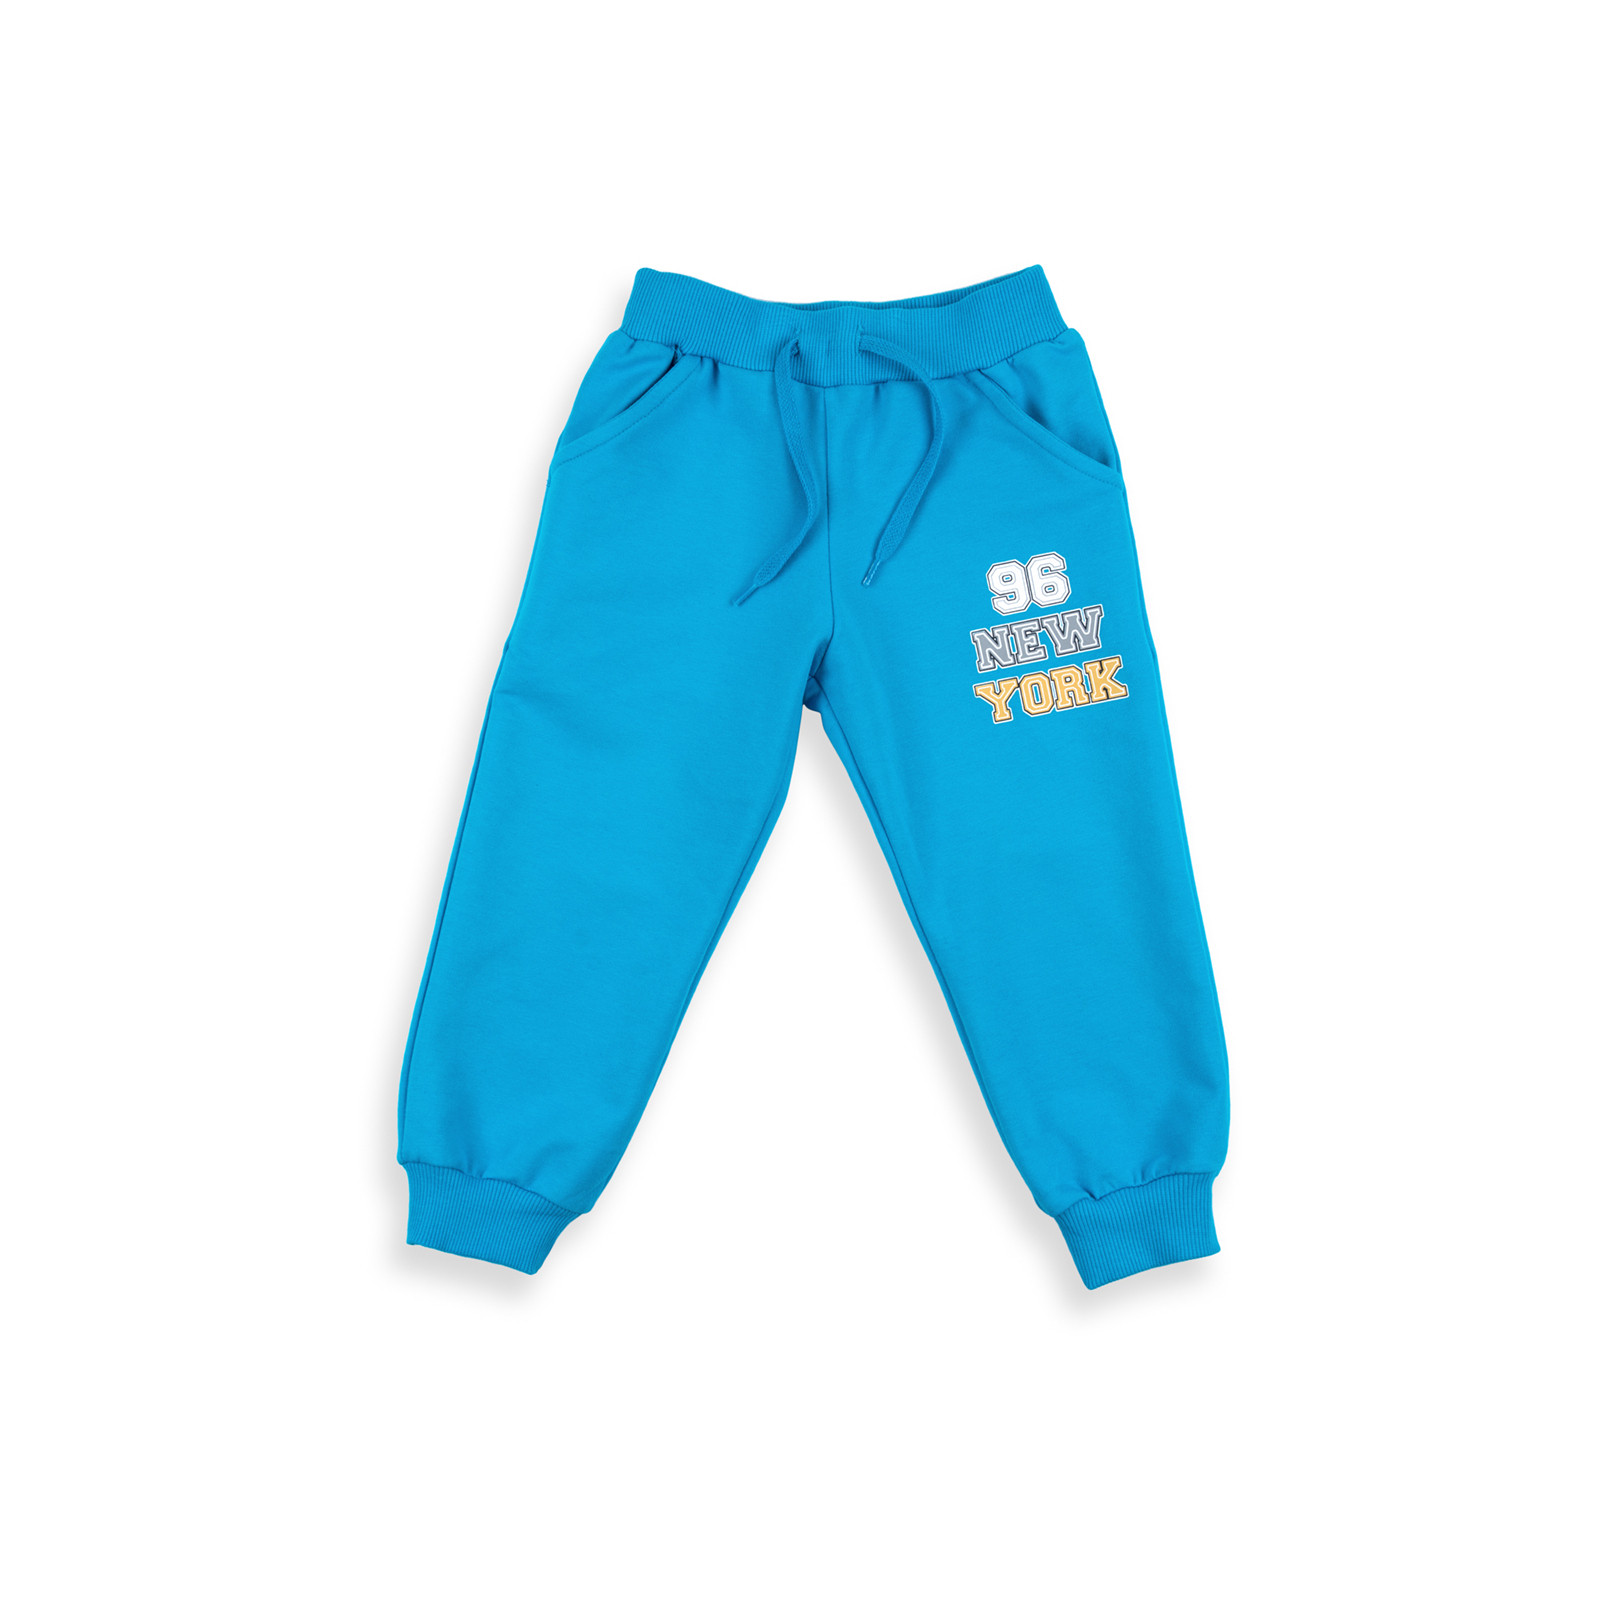 Набор детской одежды Breeze "I RUN NEW YORK" (8278-104B-blue) изображение 3